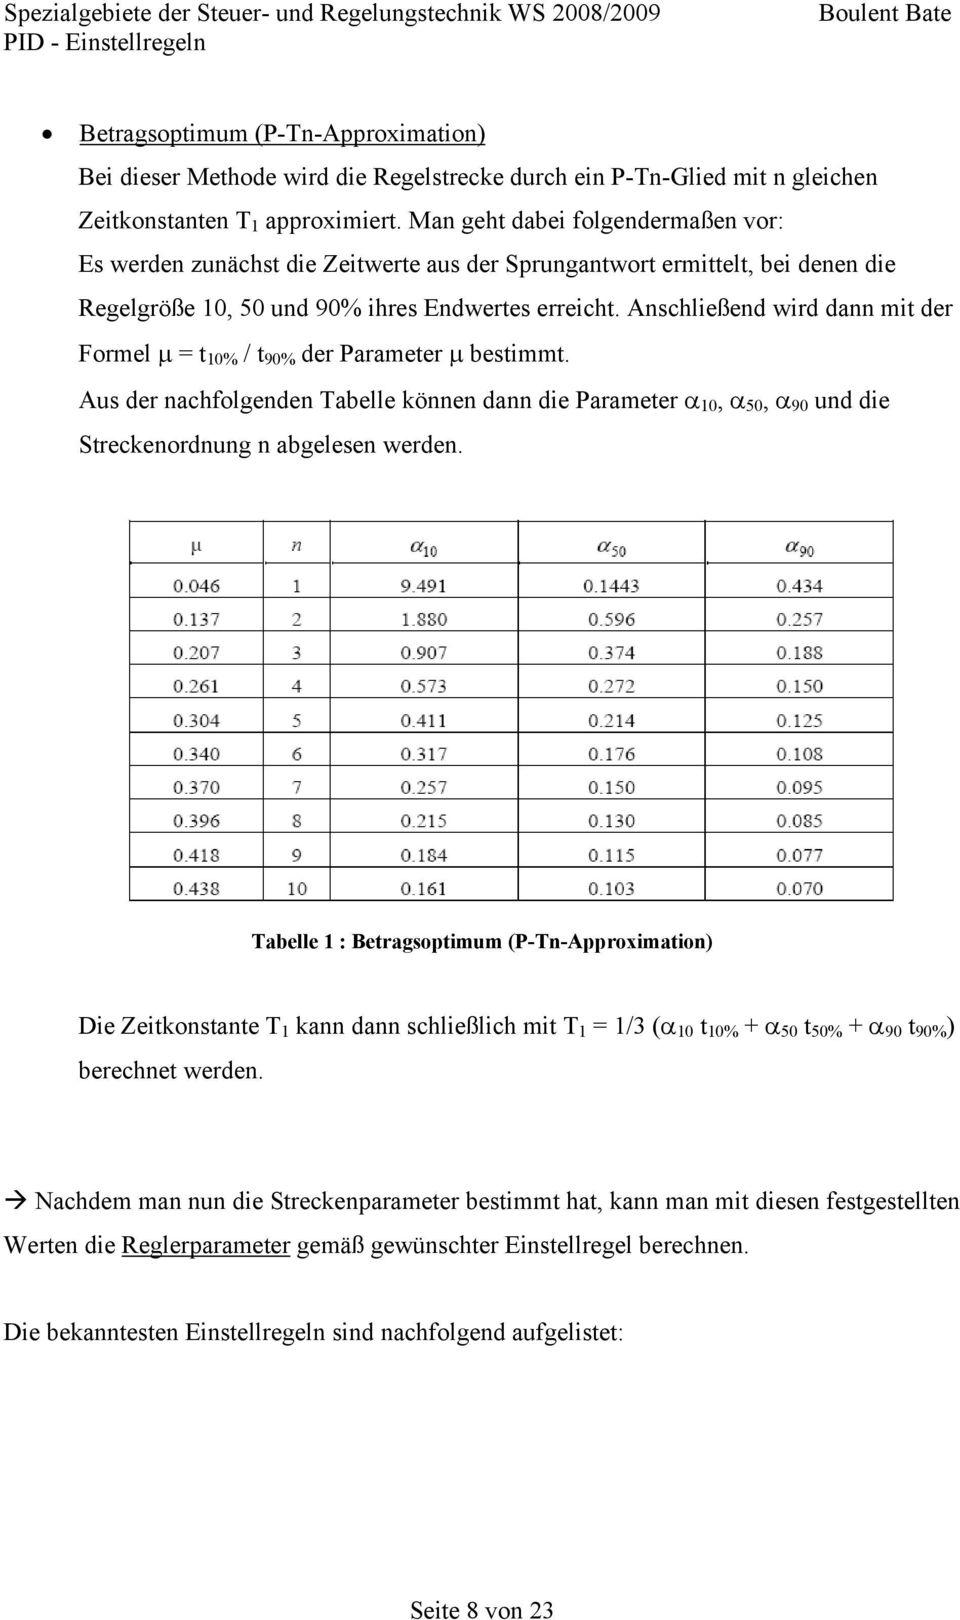 Anschließend wird dann mit der Formel µ = t 10% / t 90% der Parameter µ bestimmt. Aus der nachfolgenden Tabelle können dann die Parameter α 10, α 50, α 90 und die Streckenordnung n abgelesen werden.